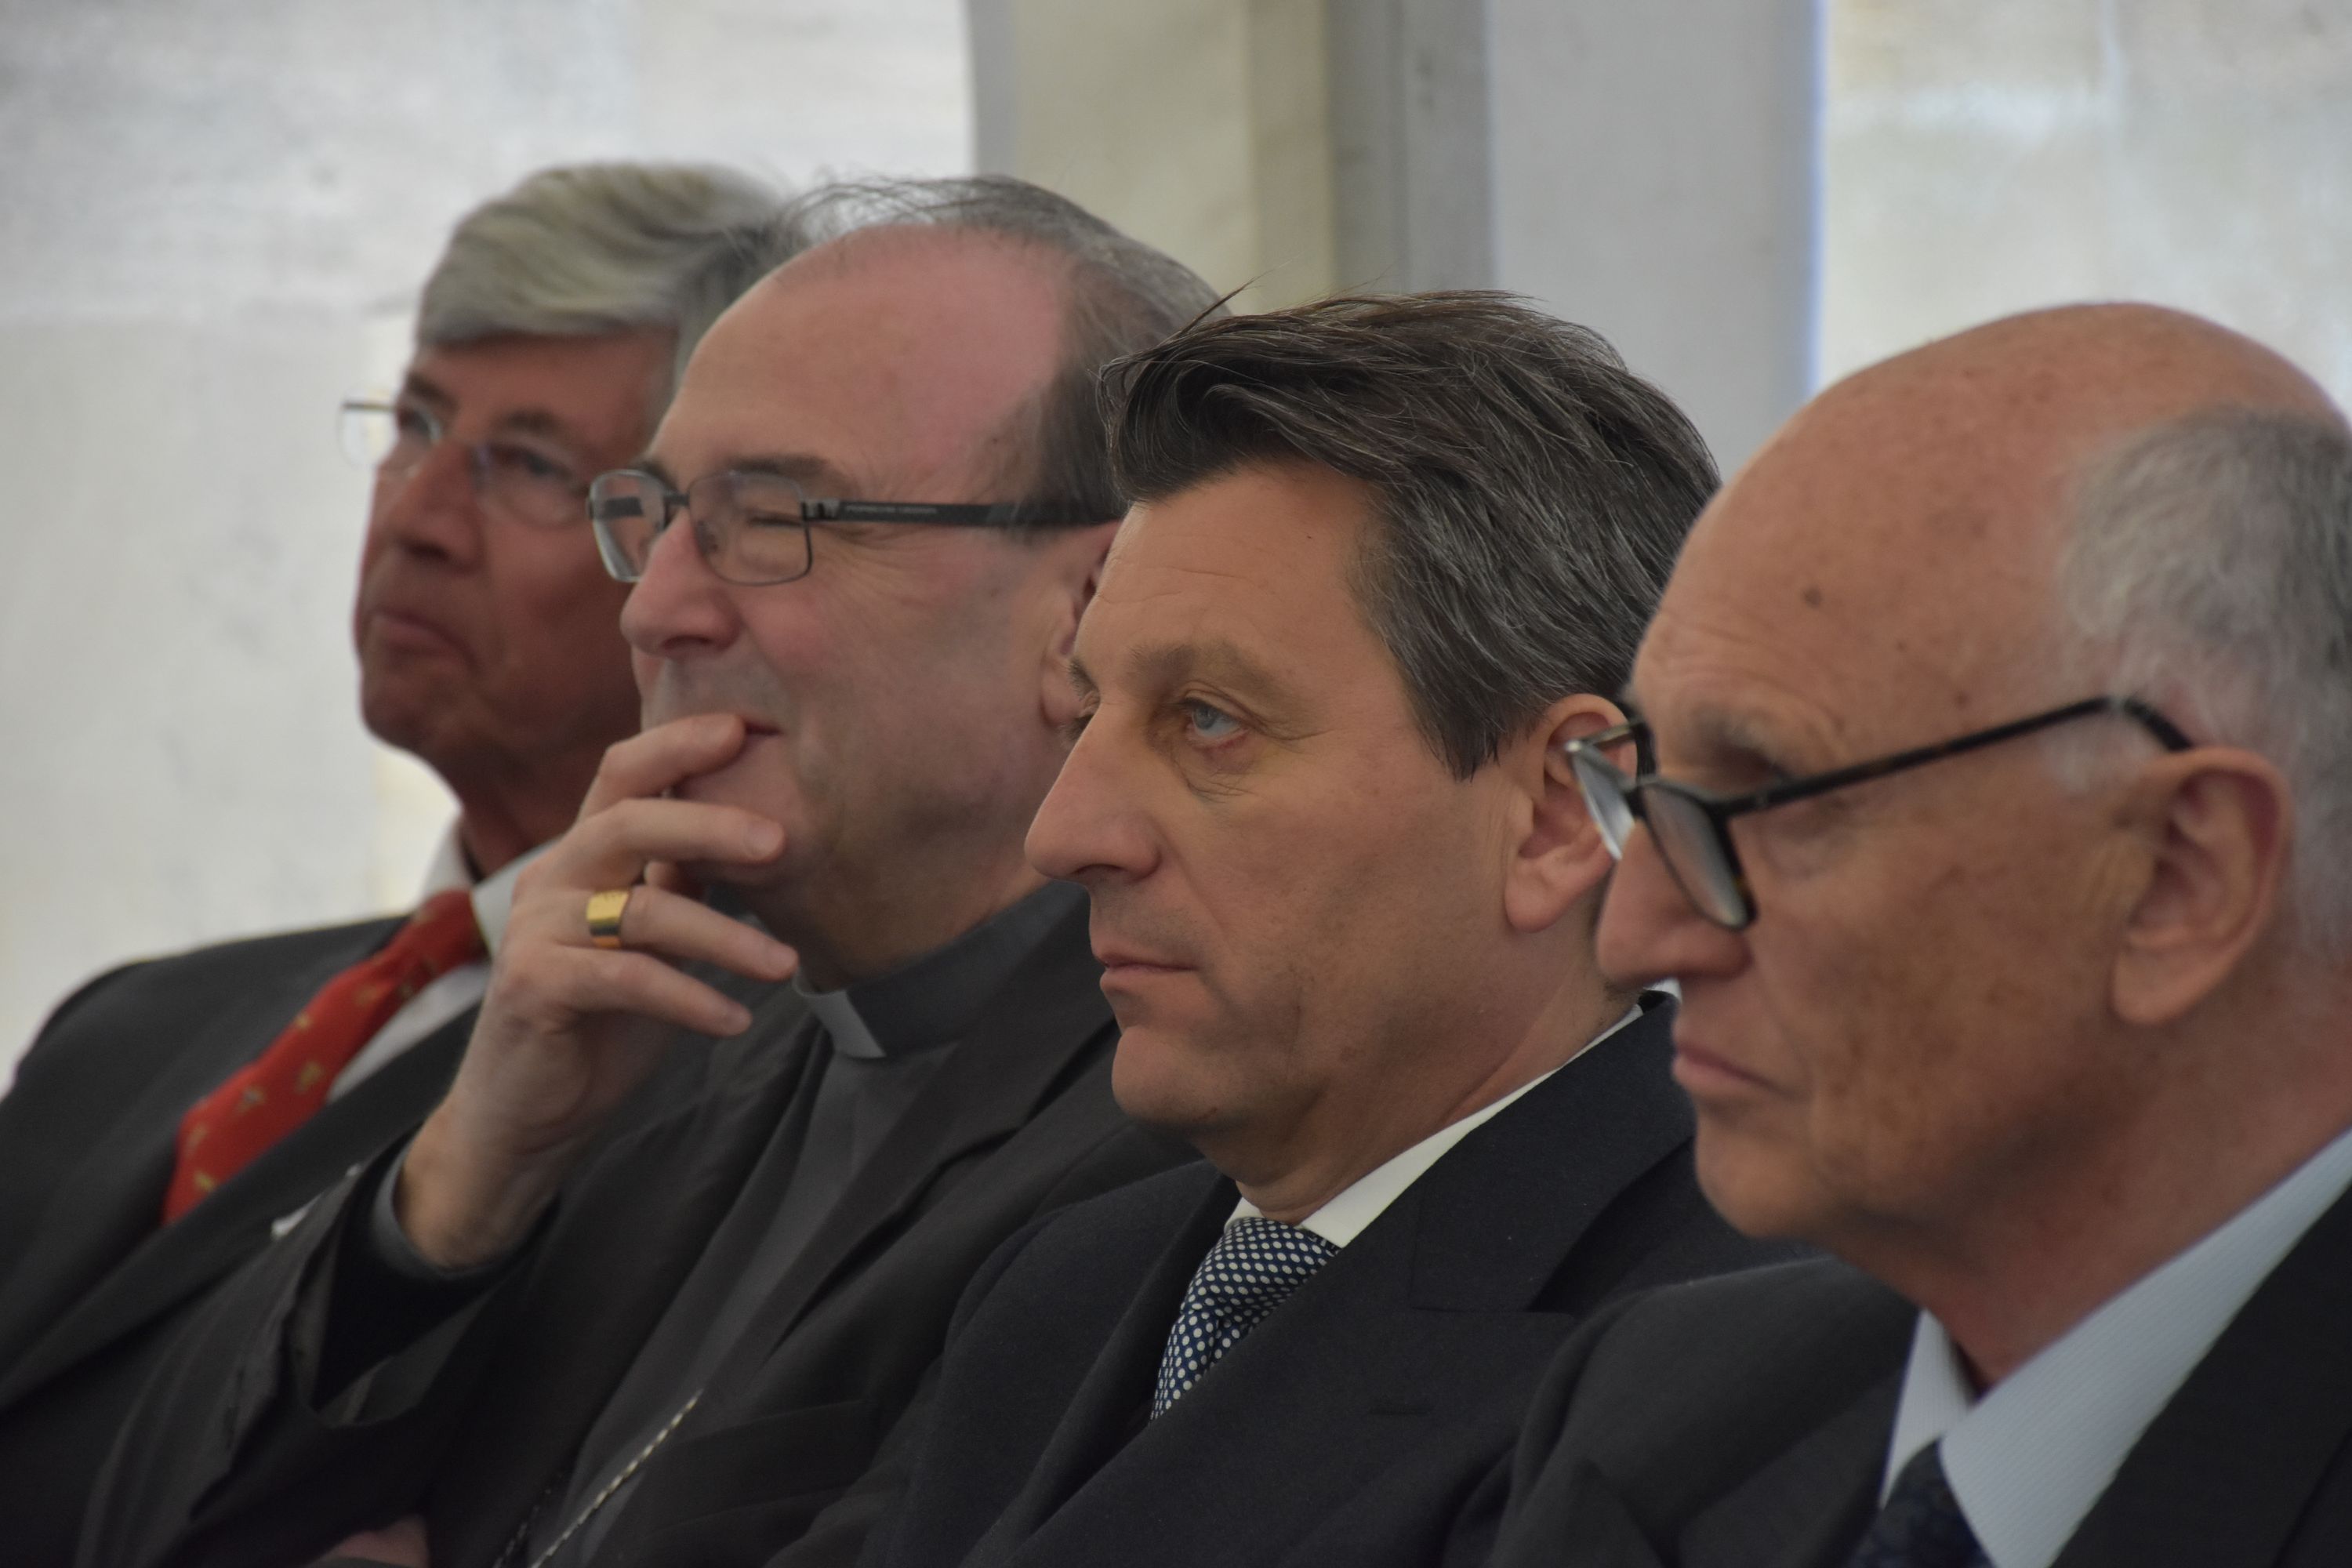 Alain DE WAELE, Secrétaire général du Fonds Baillet Latour, Monseigneur VANCOTTEM, Jürgen MEINDL, Ambassadeur d'Autriche, Jan HUYGHEBAERT, Président du Fonds Baillet Latour